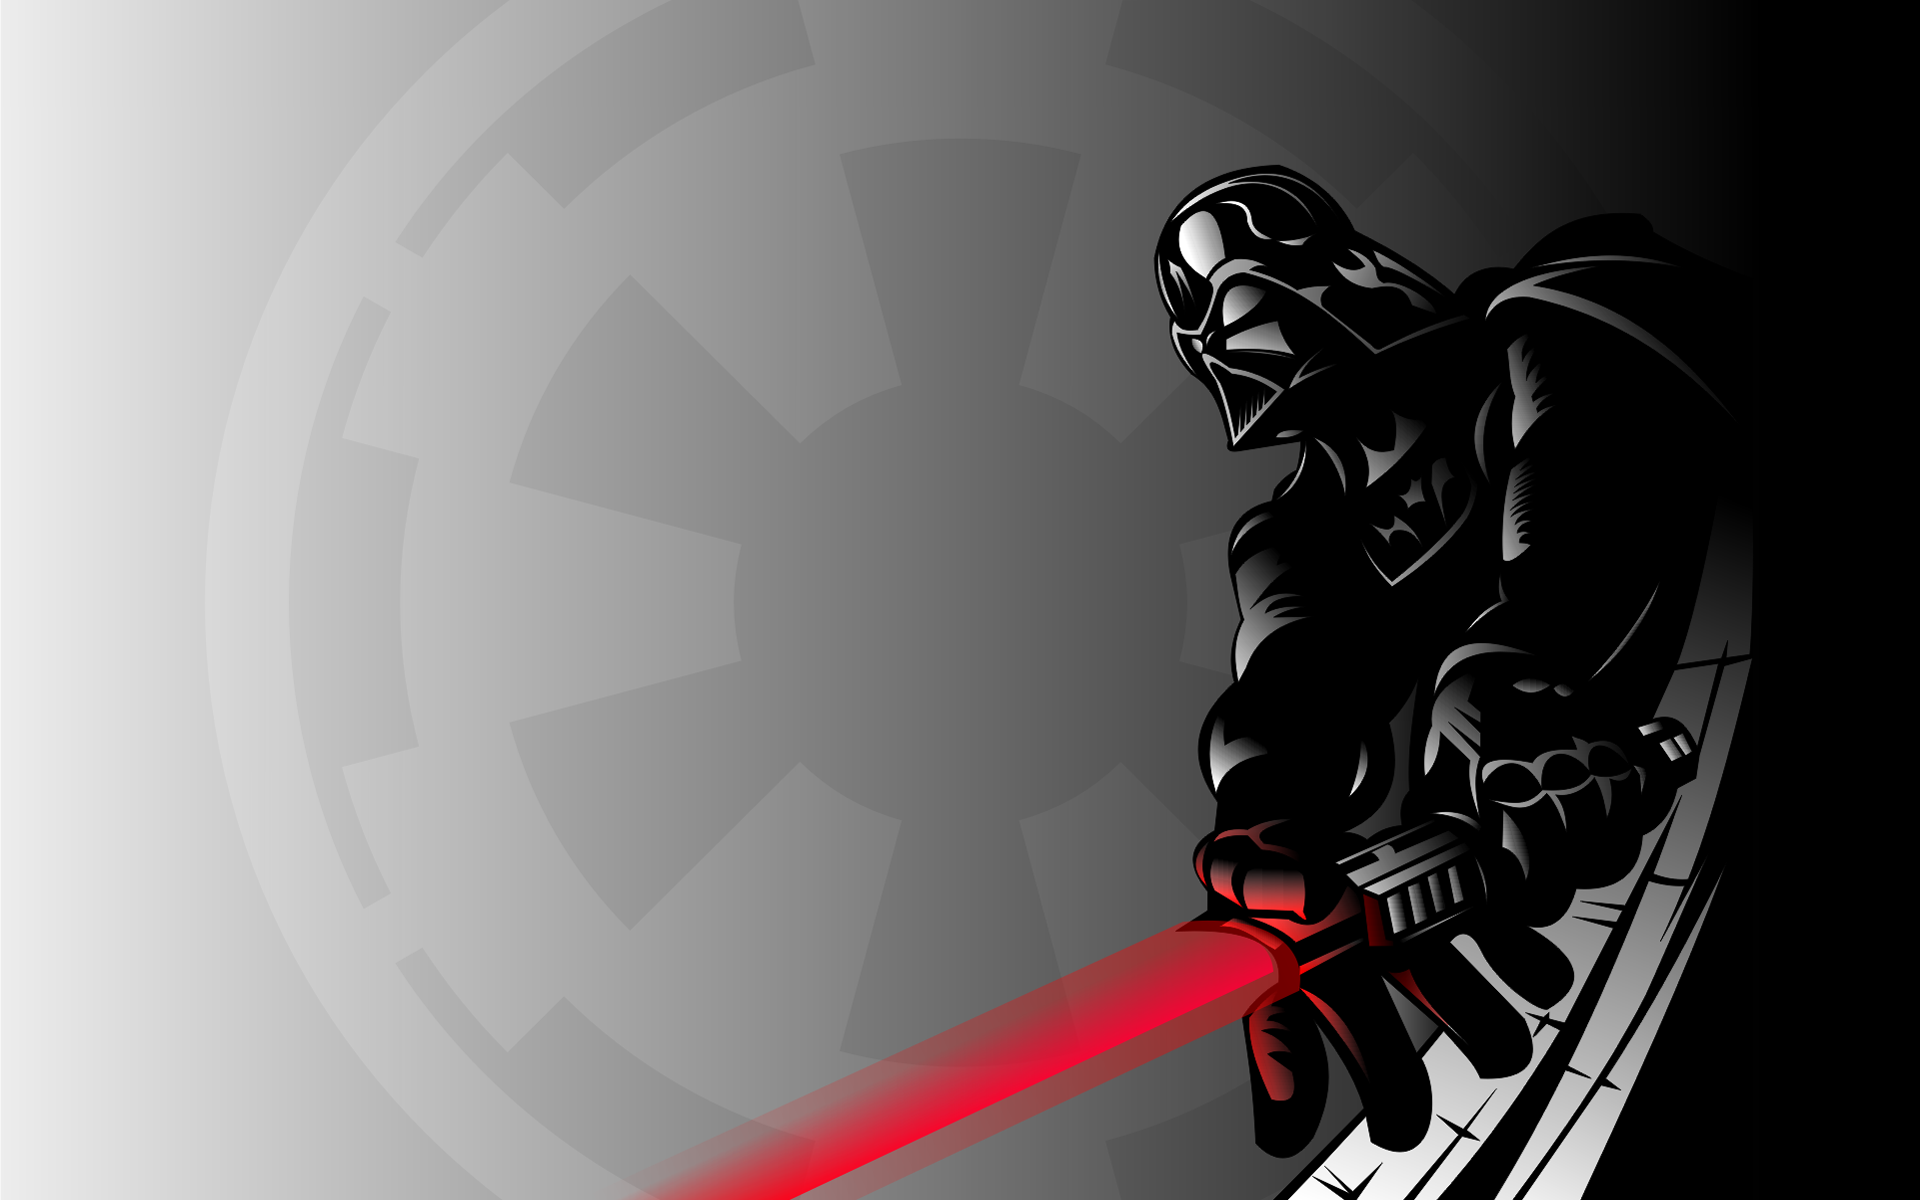 Star Wars, Darth Vader - desktop wallpaper